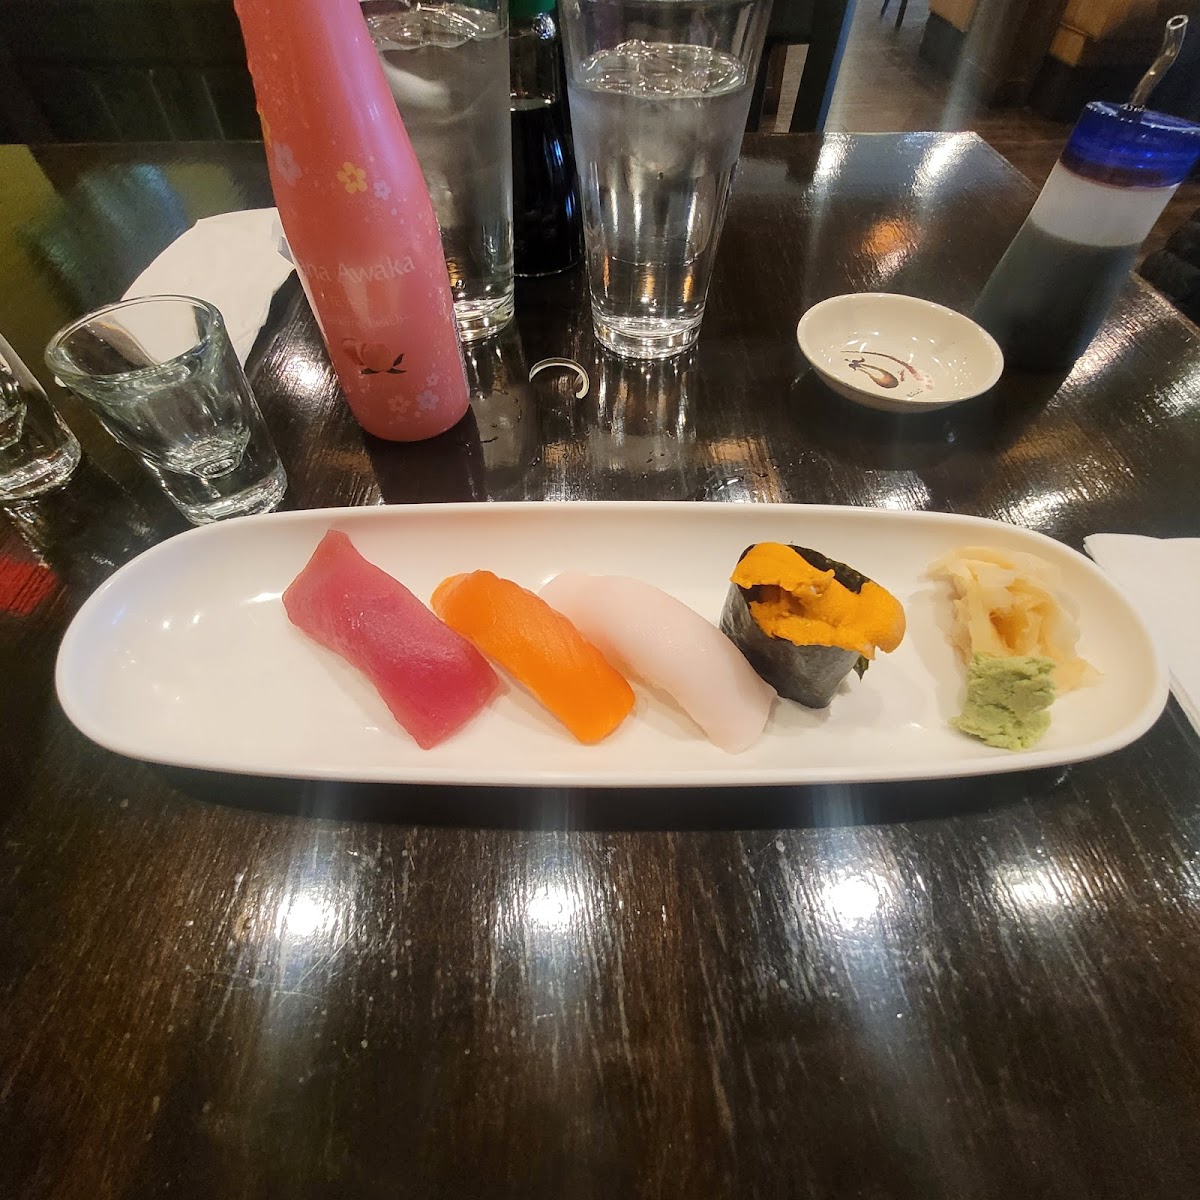 Gluten-Free at Sushi Kushi 4 U